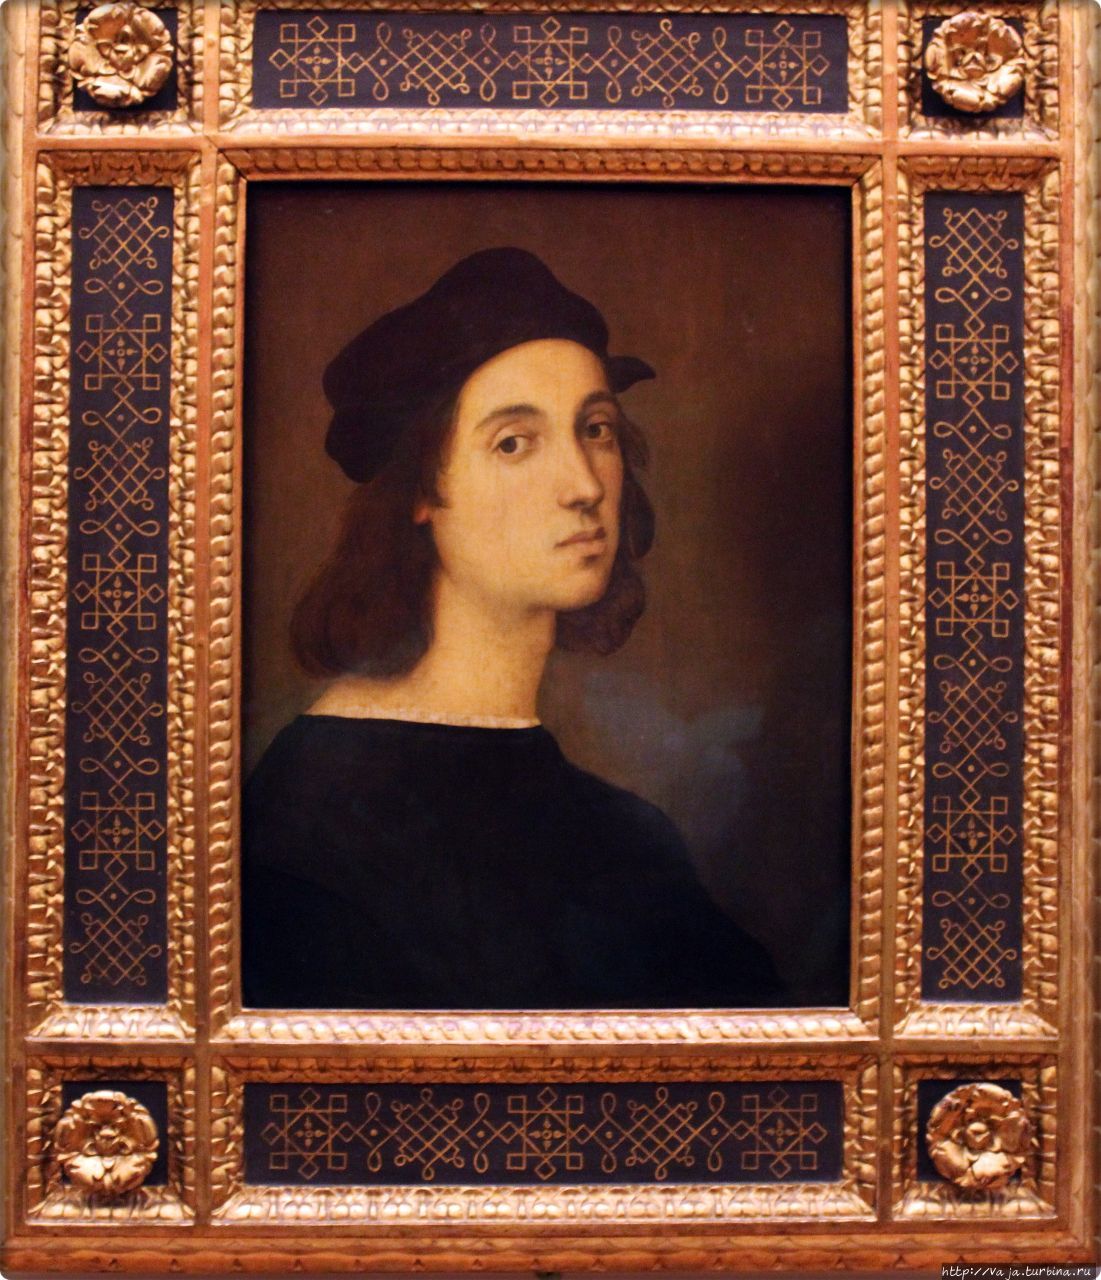 Рафаэль Санти. Автопортрет. Рафаэль родился в 28 марта 1483 года в Урбино,Рафаэль по праву является великим Итальянским живописцем,графиком и архитектором,представителем умбрийской школы. Рафаэль был учеником другого величайшего живописца Пьетро Перуджино из Перуджи. Рафаэль умер в Риме 6 апреля 1520 года в возрасте 37 лет. Флоренция, Италия